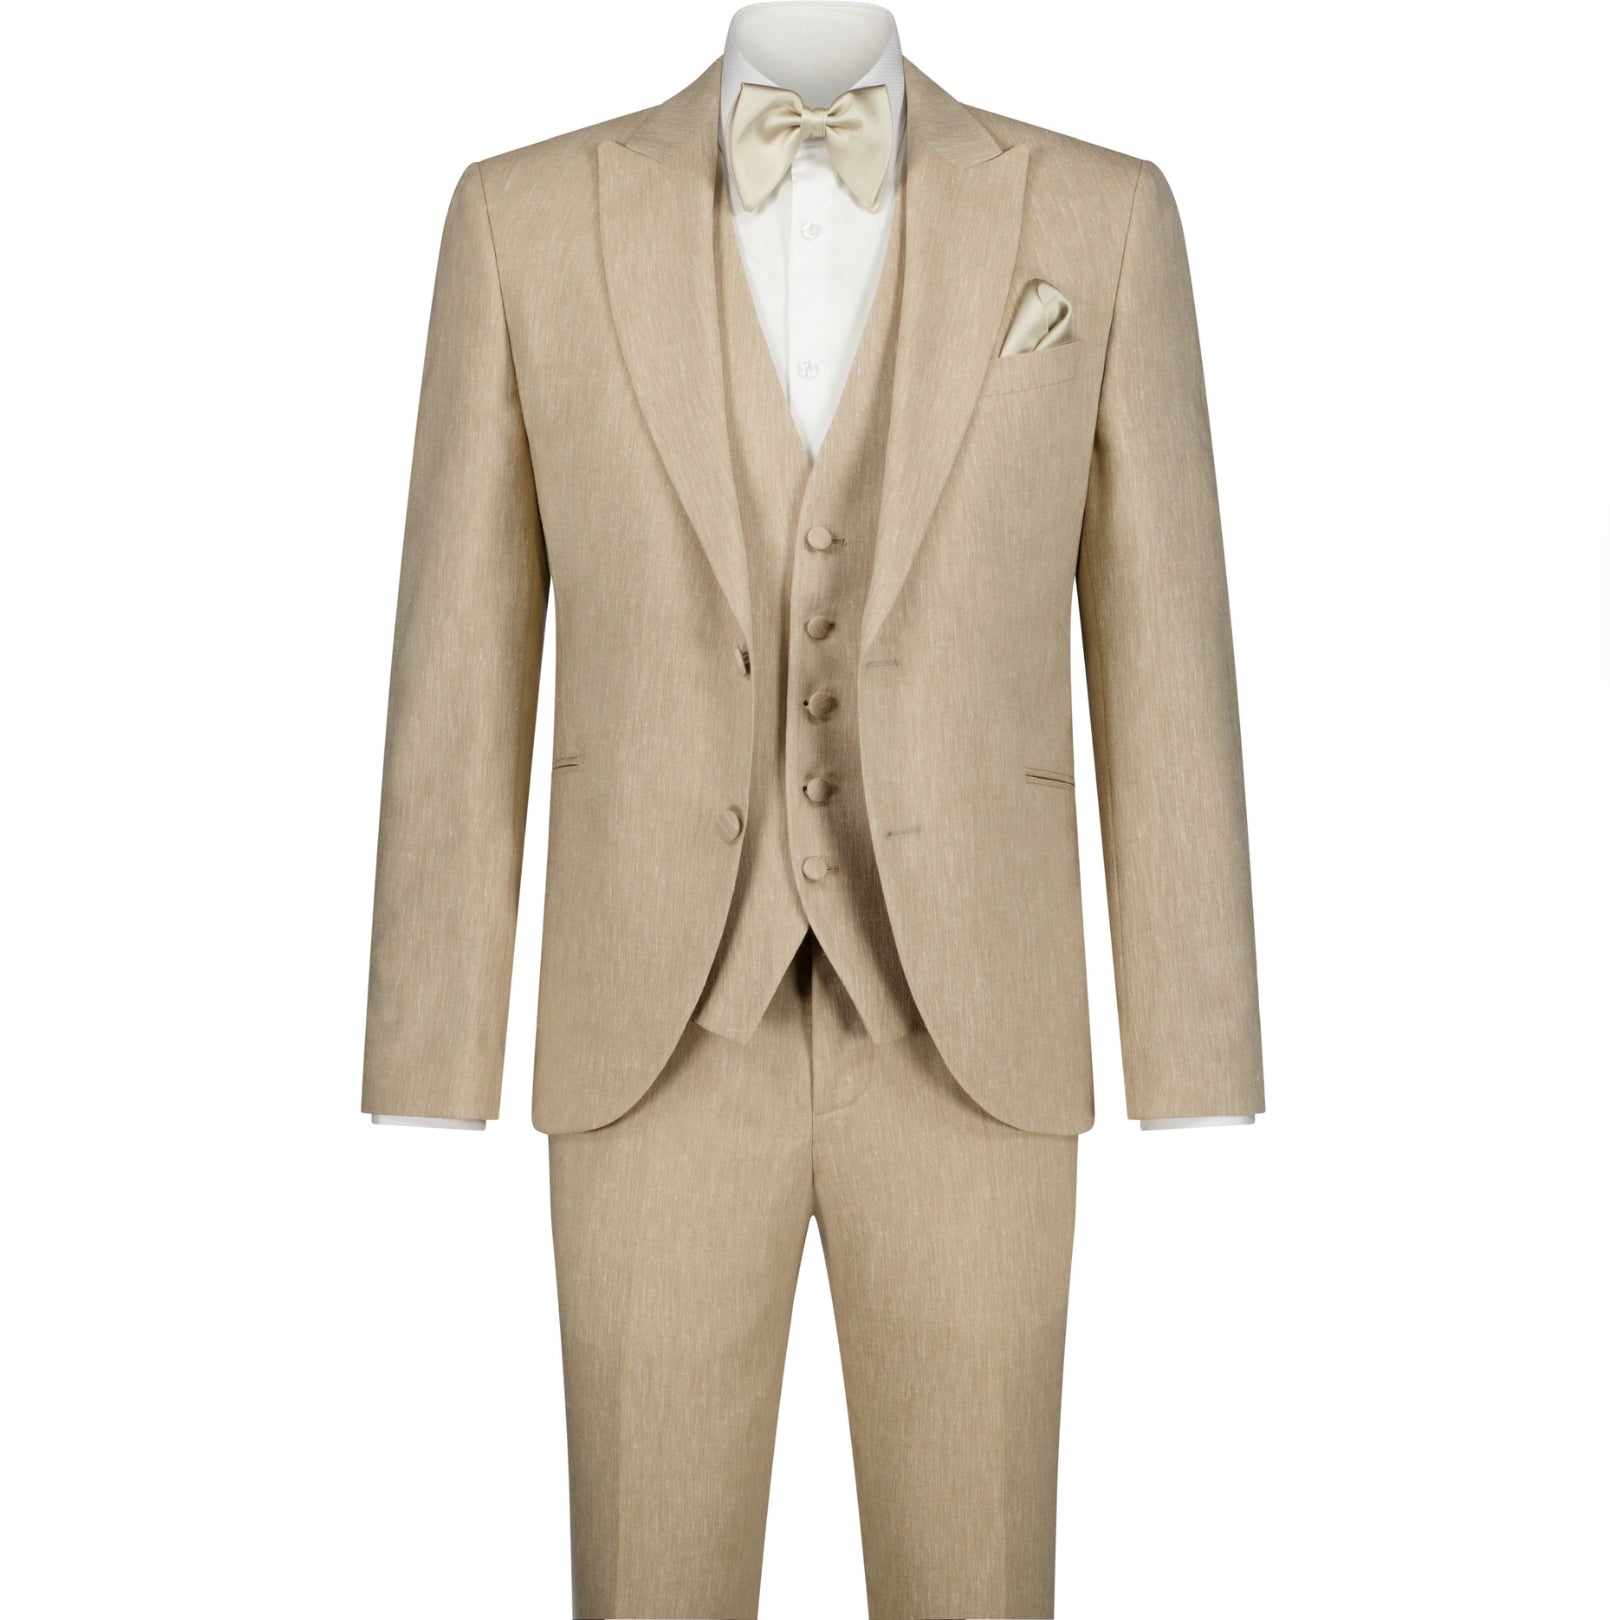 The Soirée Suit